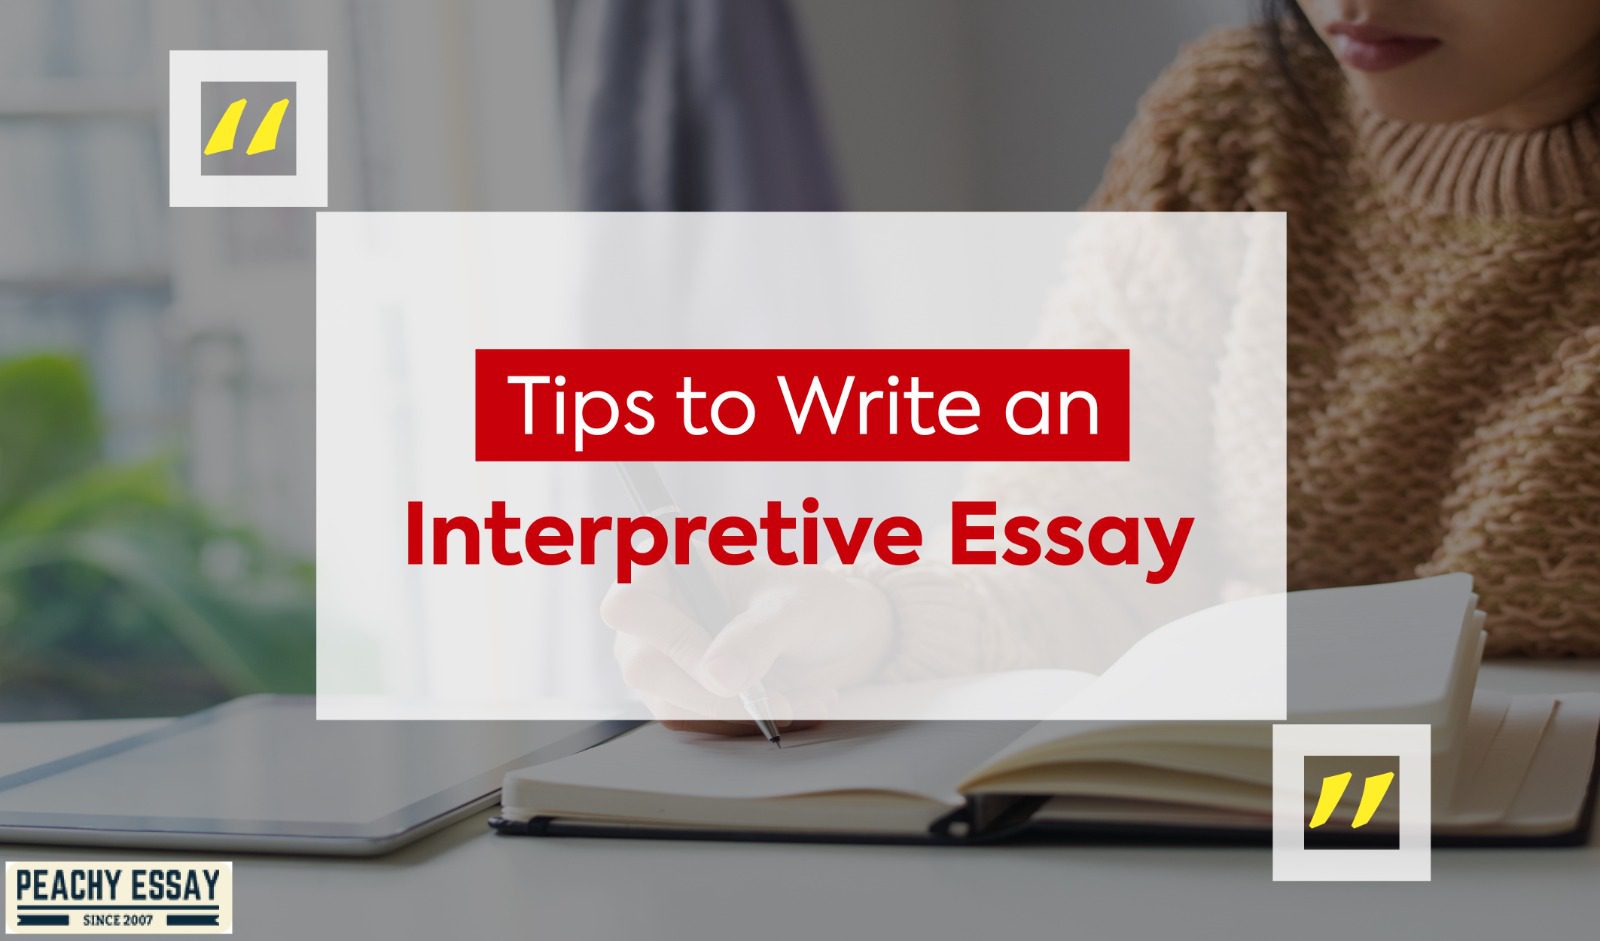 how do you interpret an essay question